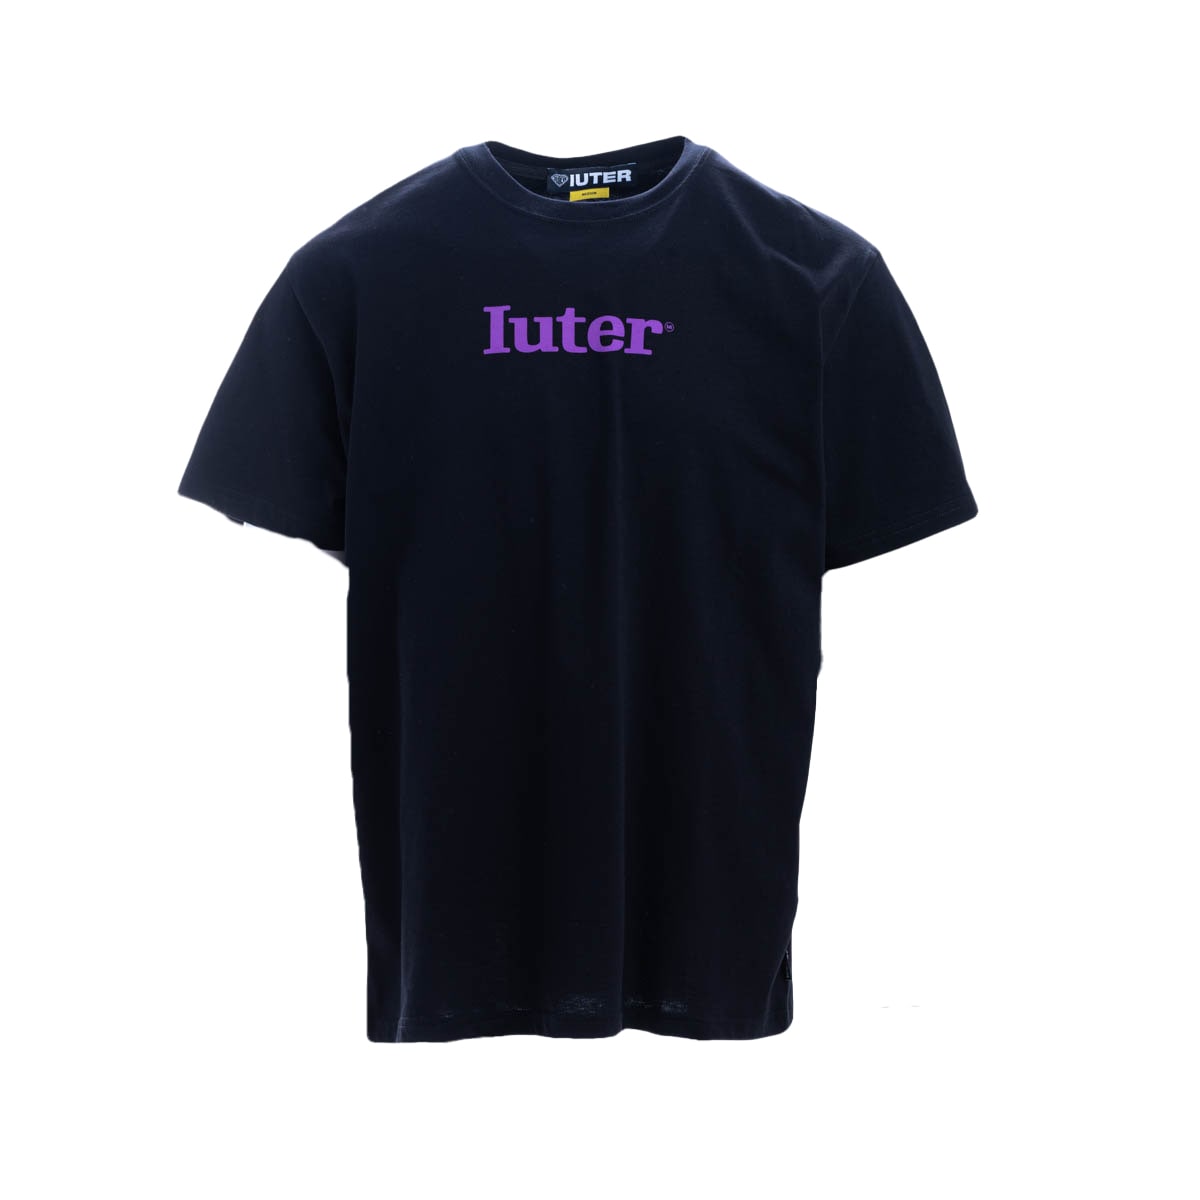 Iuter Cotton T-shirt